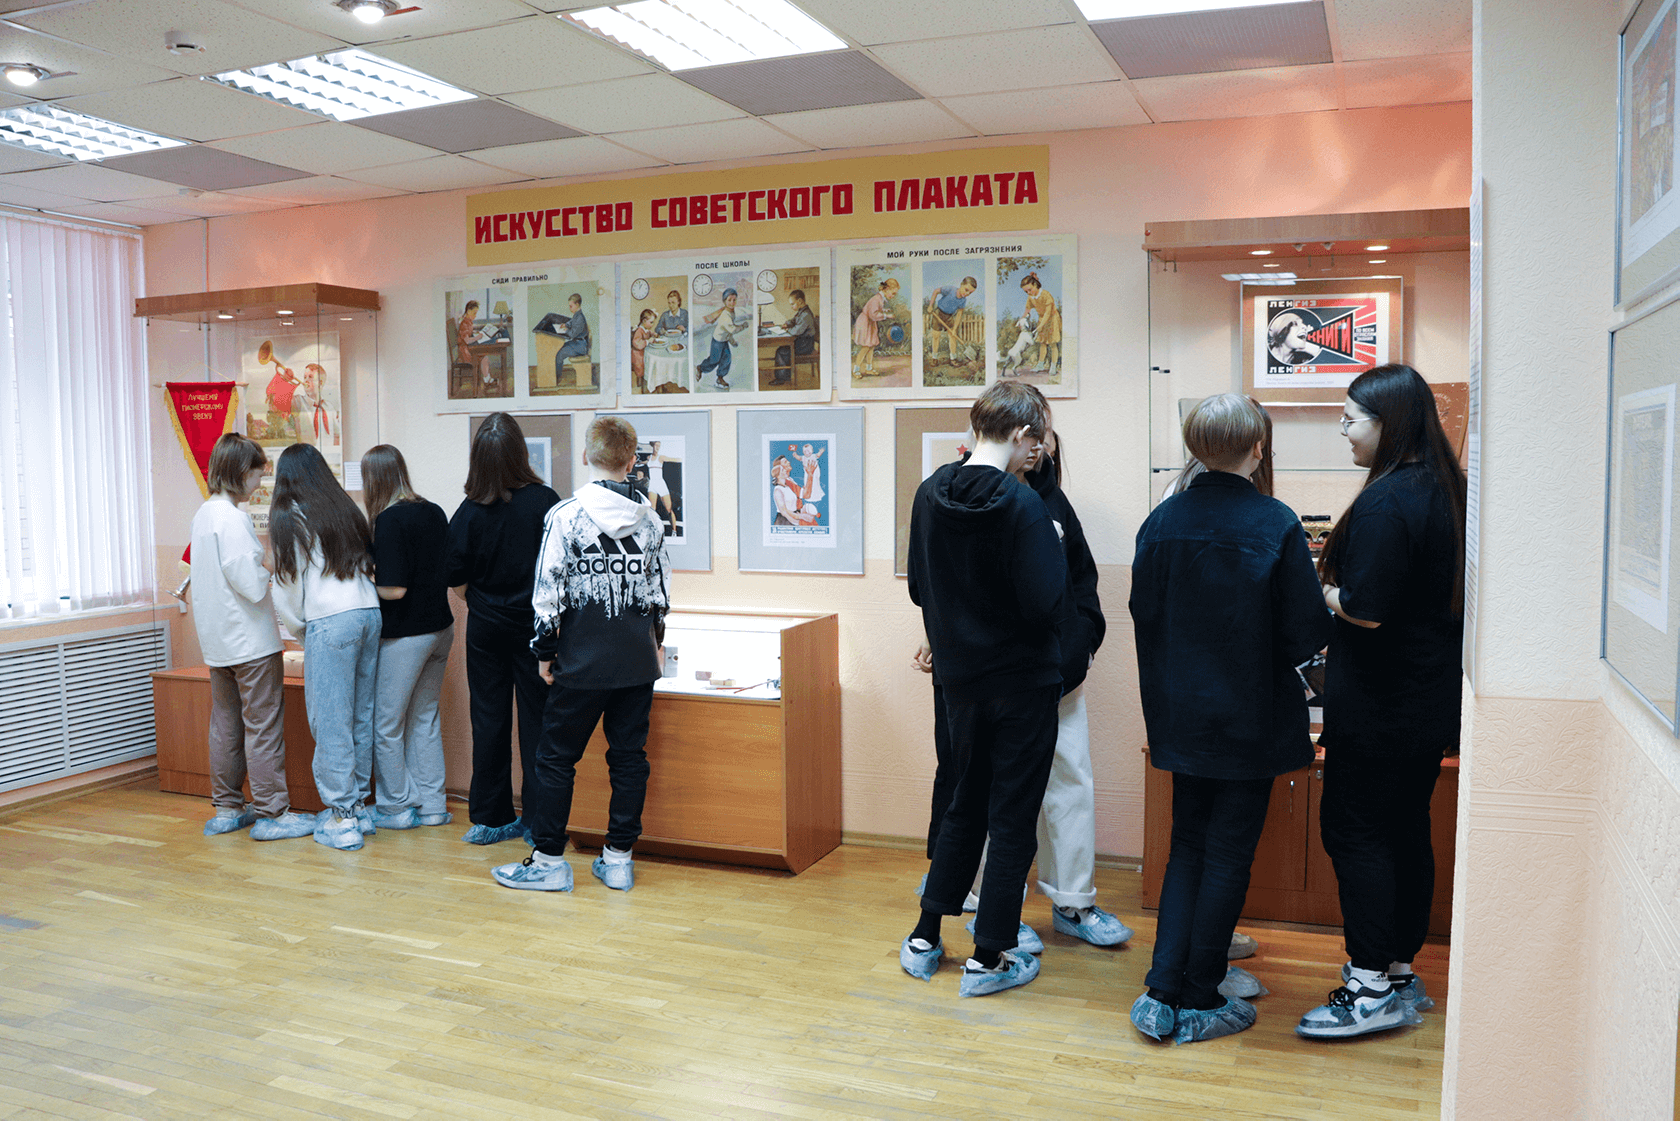 подростки рассматривают предметы на выставке «Искусство советского плаката»